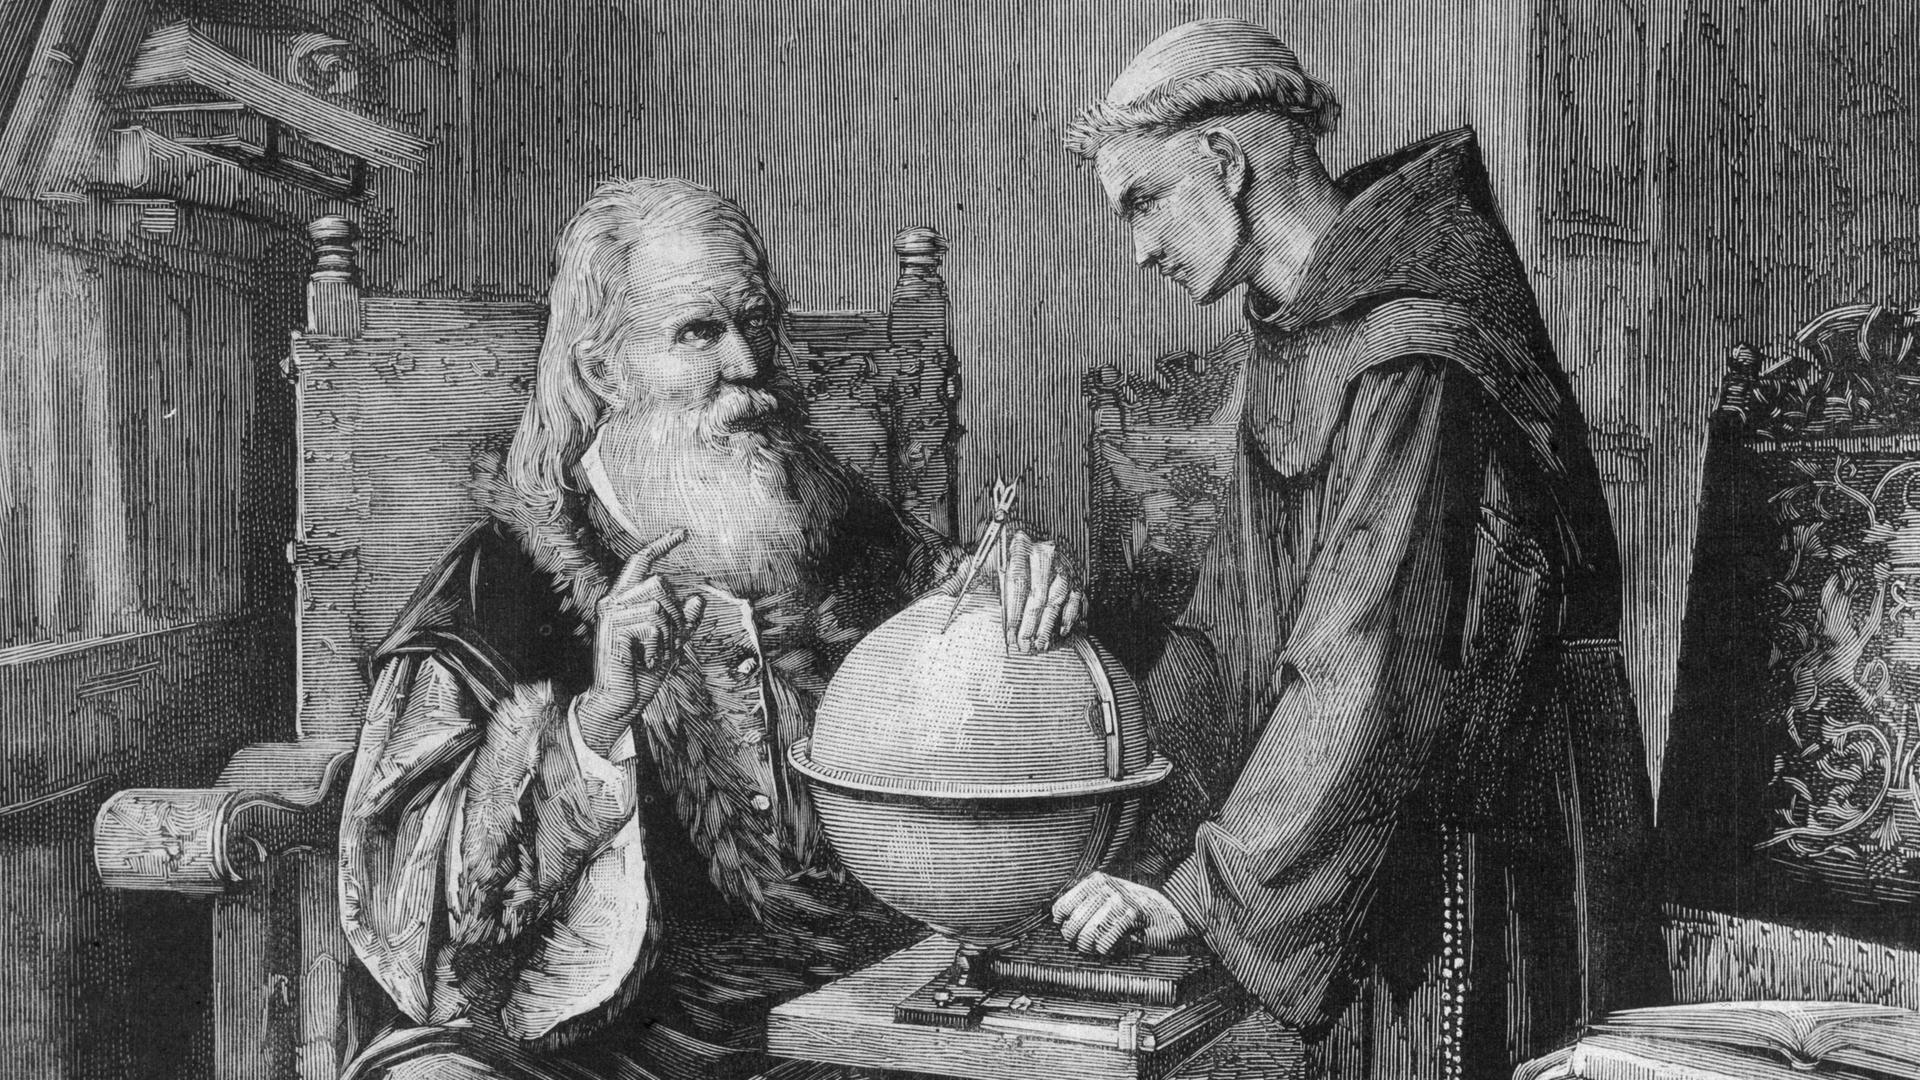 Eine alte Zeichnung zeigt, wie ein Mann mit langemBart einem anderen etwas mit seinem Globus erklärt.